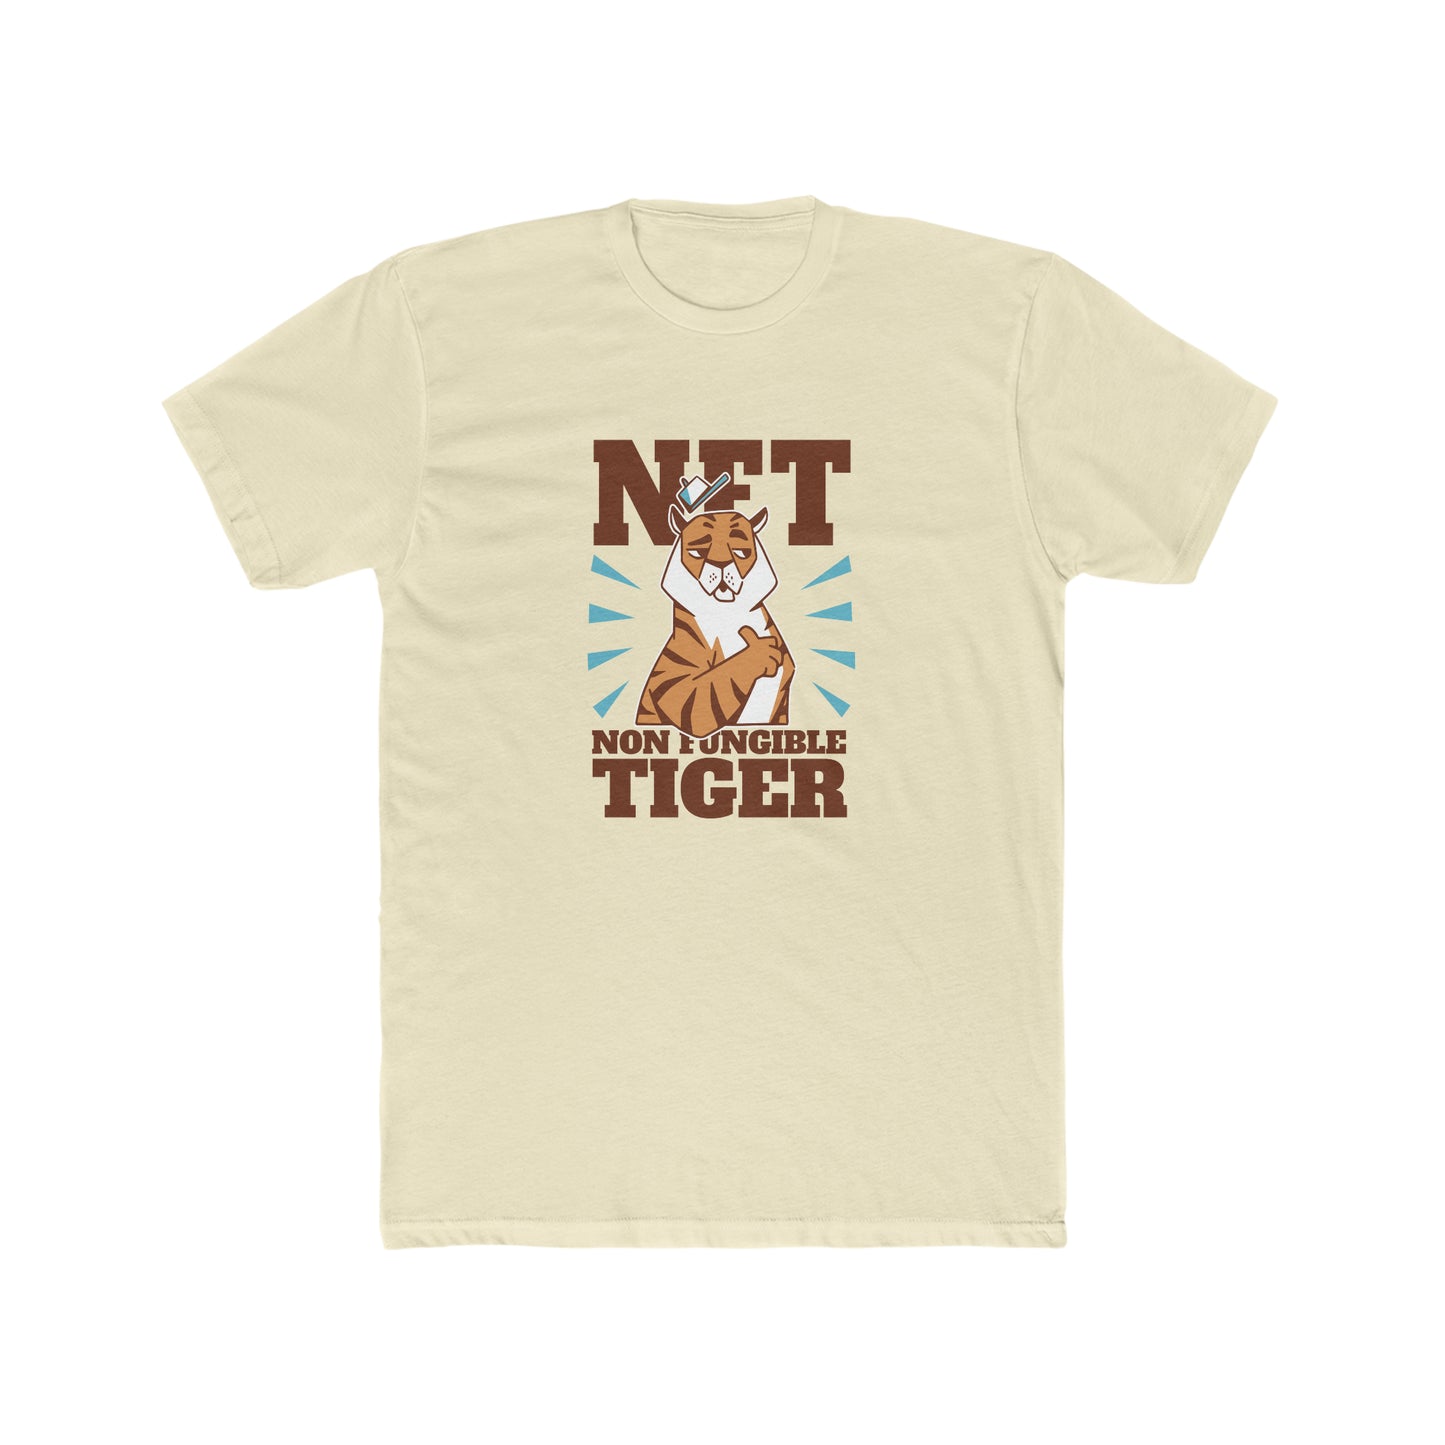 Men's Cotton Crew Non Fungible Tiger T-shirt